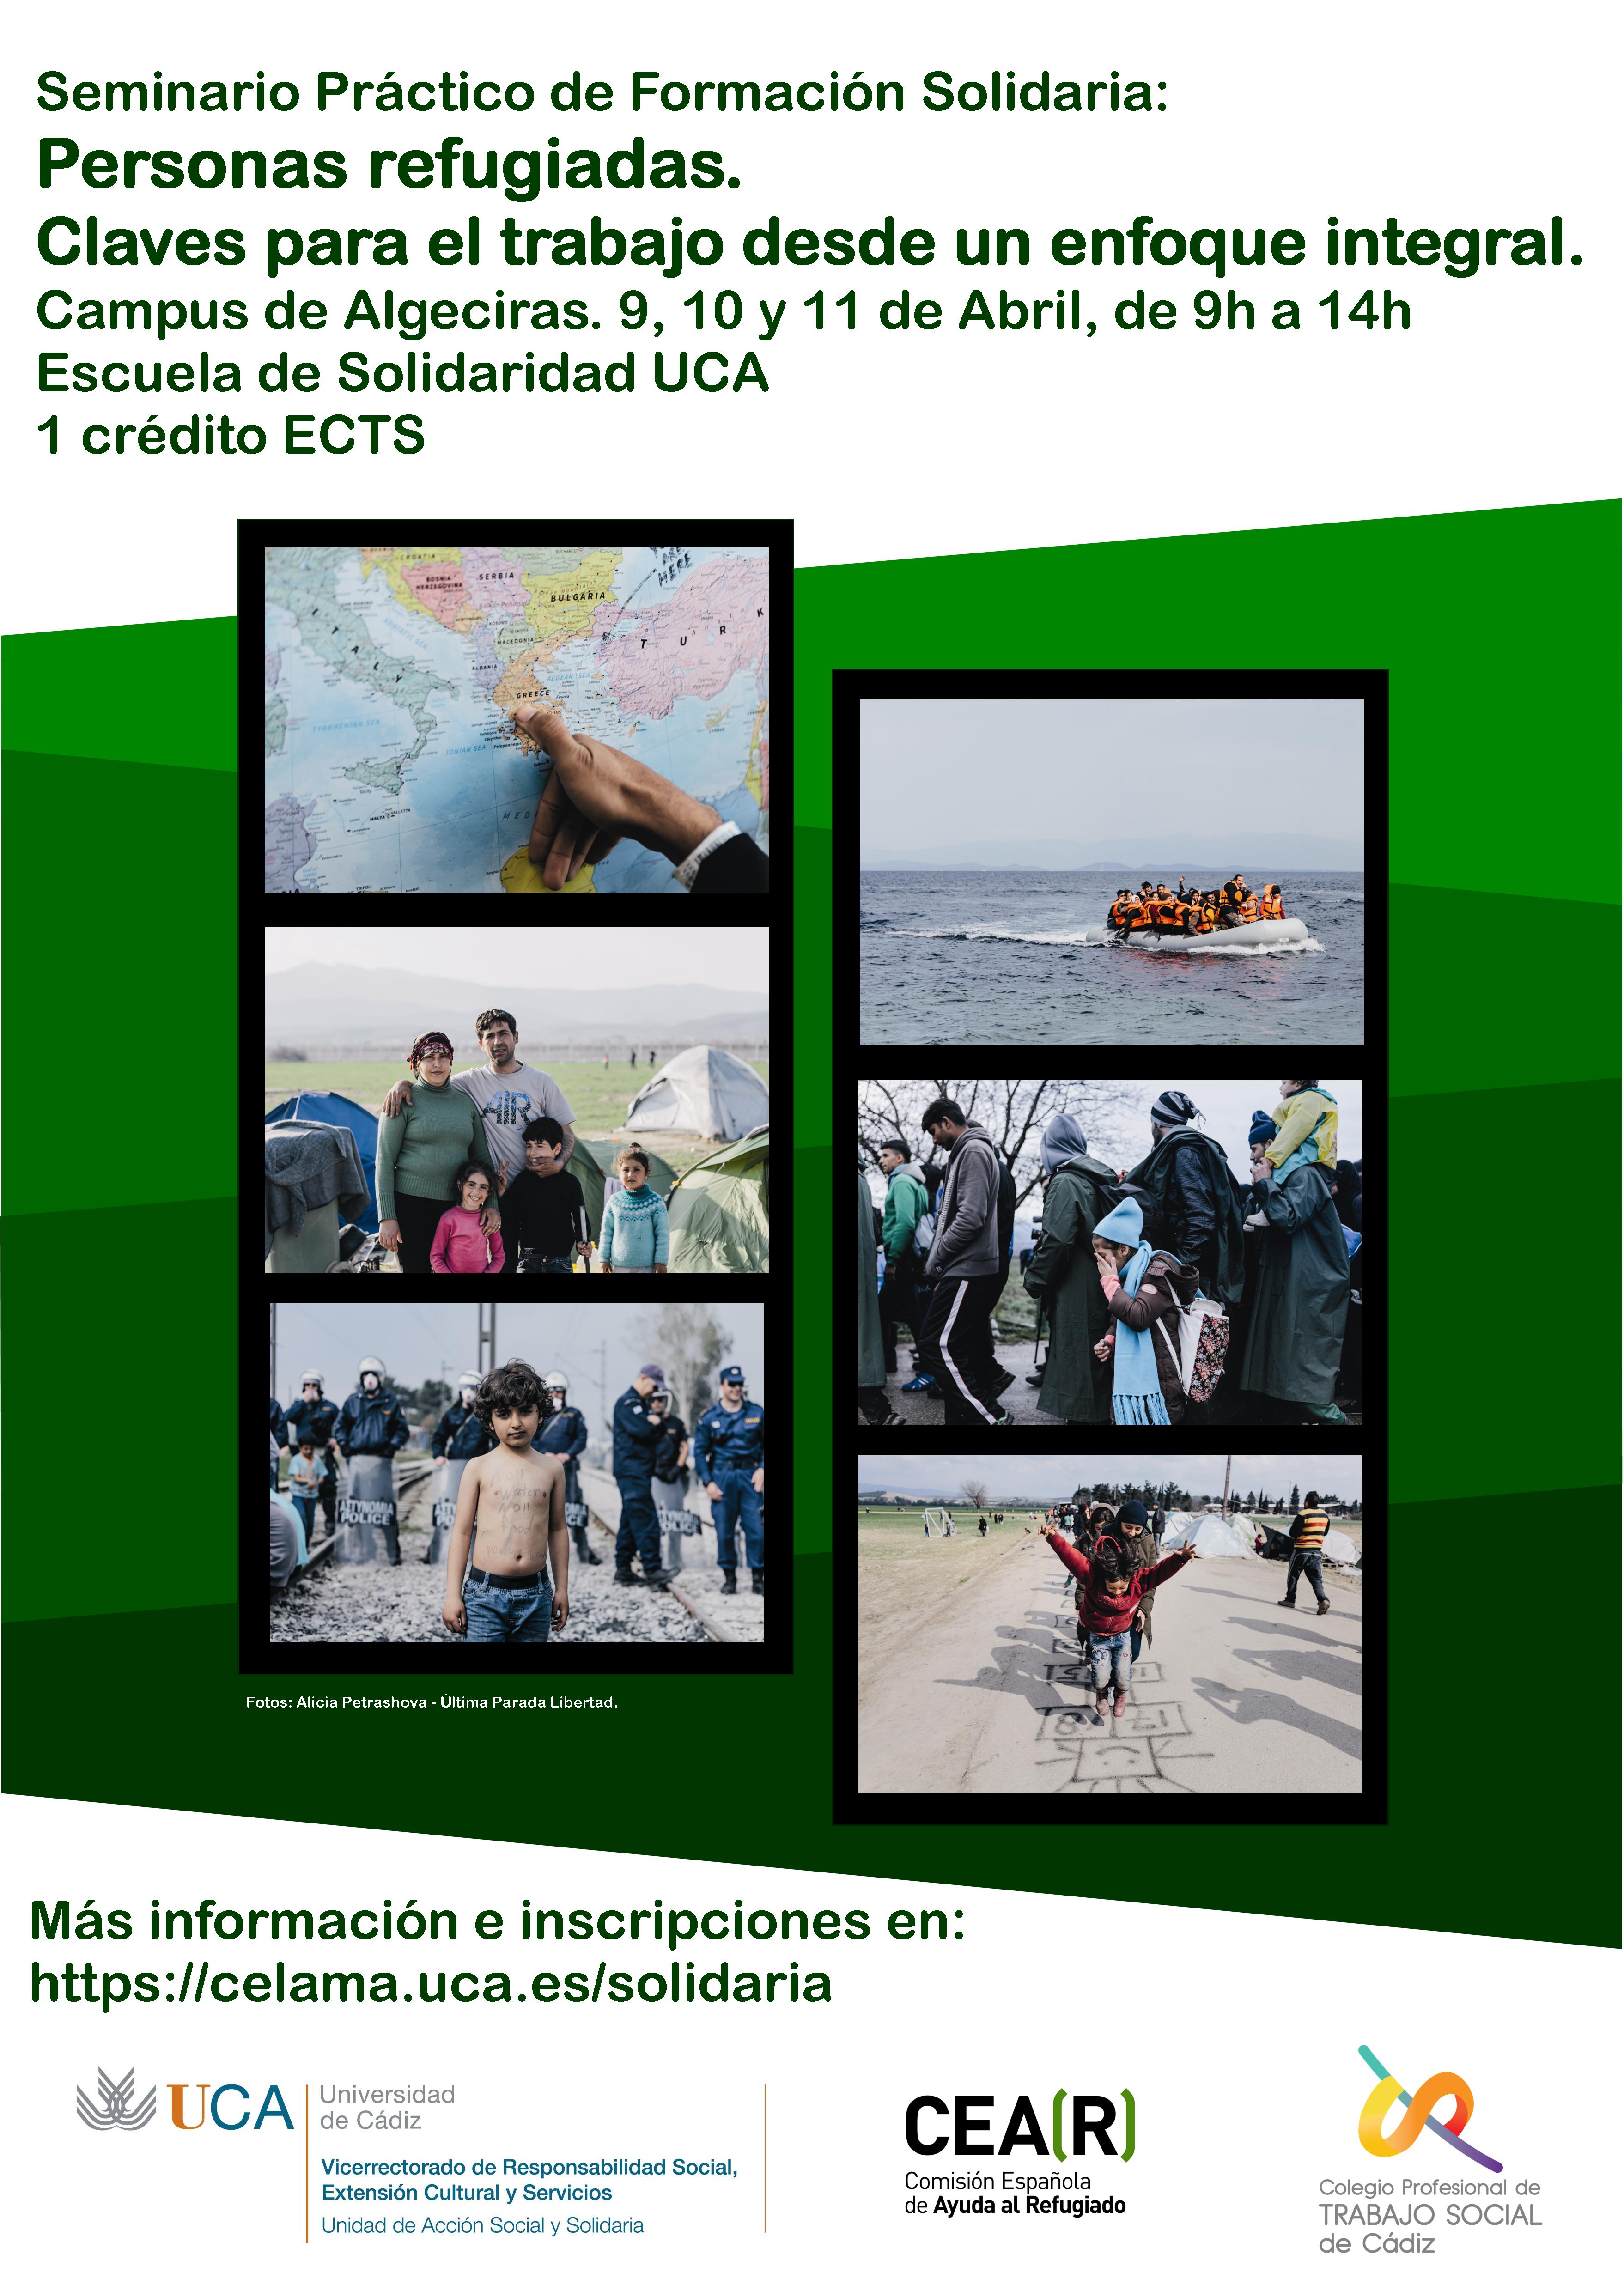 Seminario “Personas refugiadas: Claves para el trabajo desde un enfoque integral”.Campus de Algeciras 9, 10 y 11 de abril.